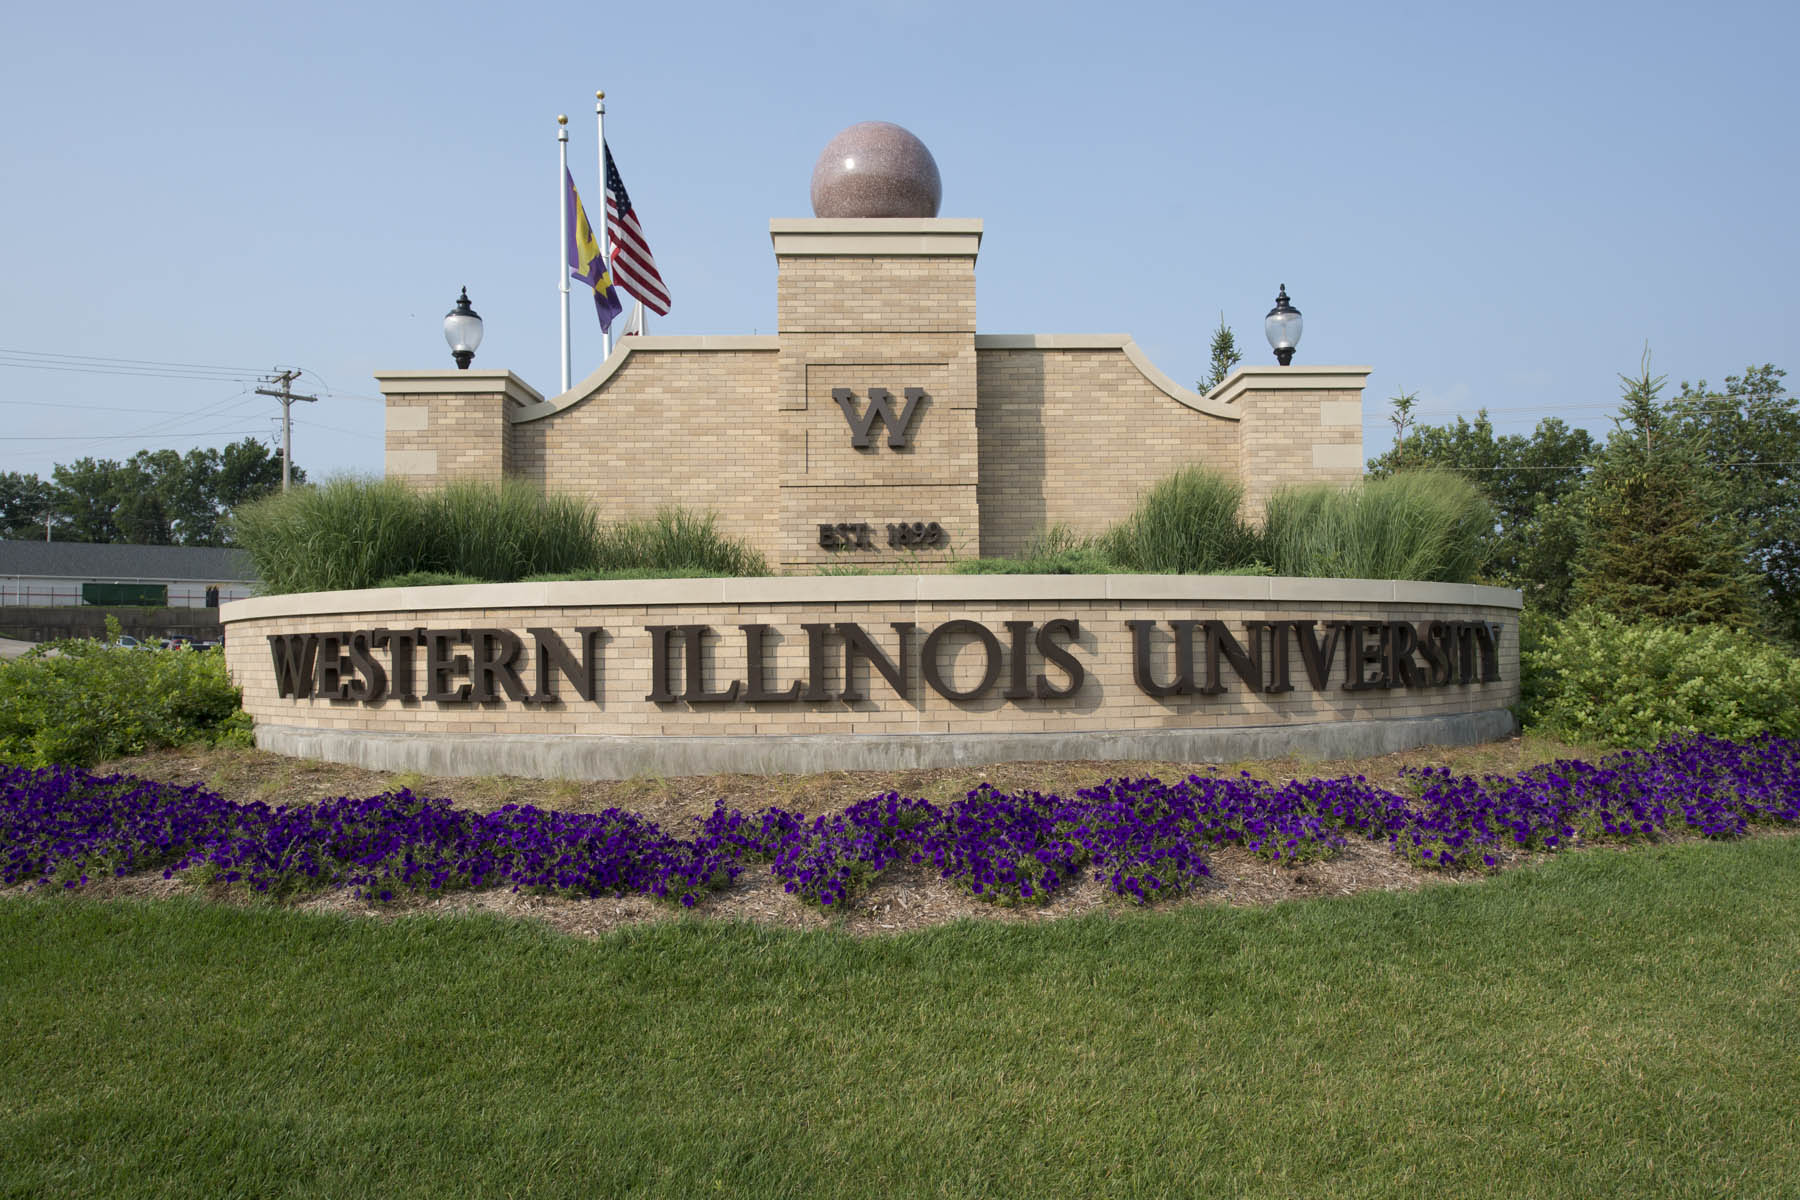 Graduate Studies - Western Illinois University